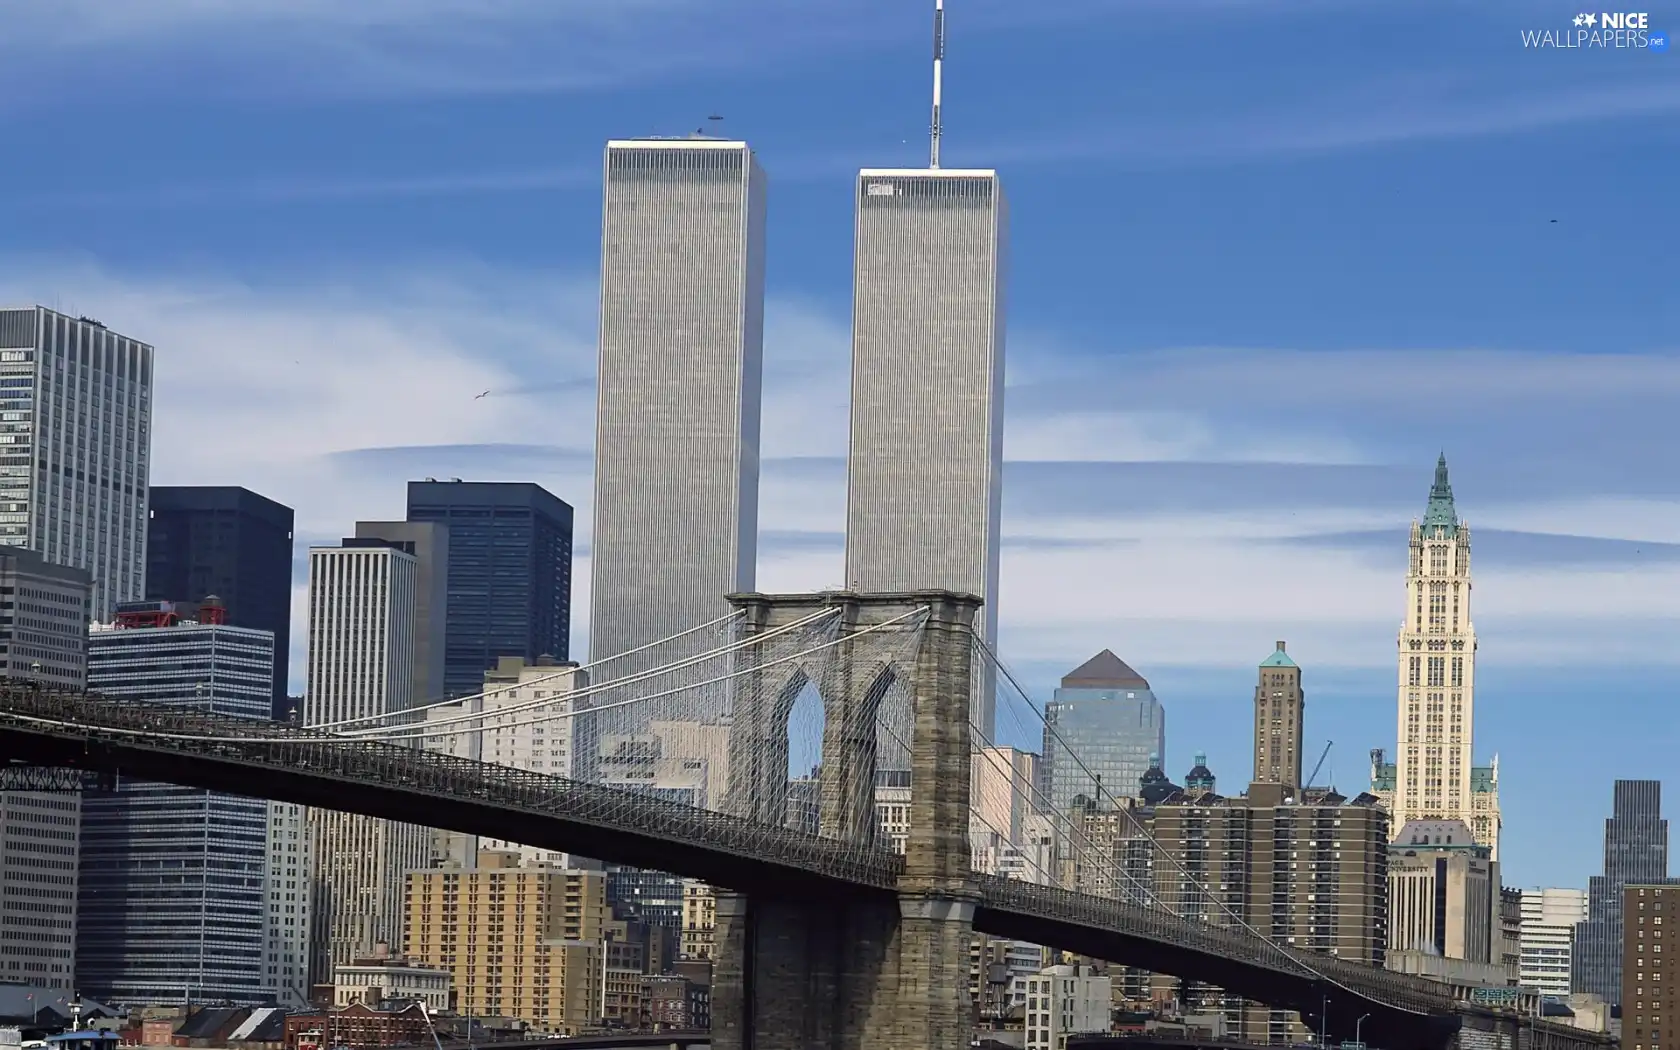 bridge, New York, Manhattan, Twin Towers